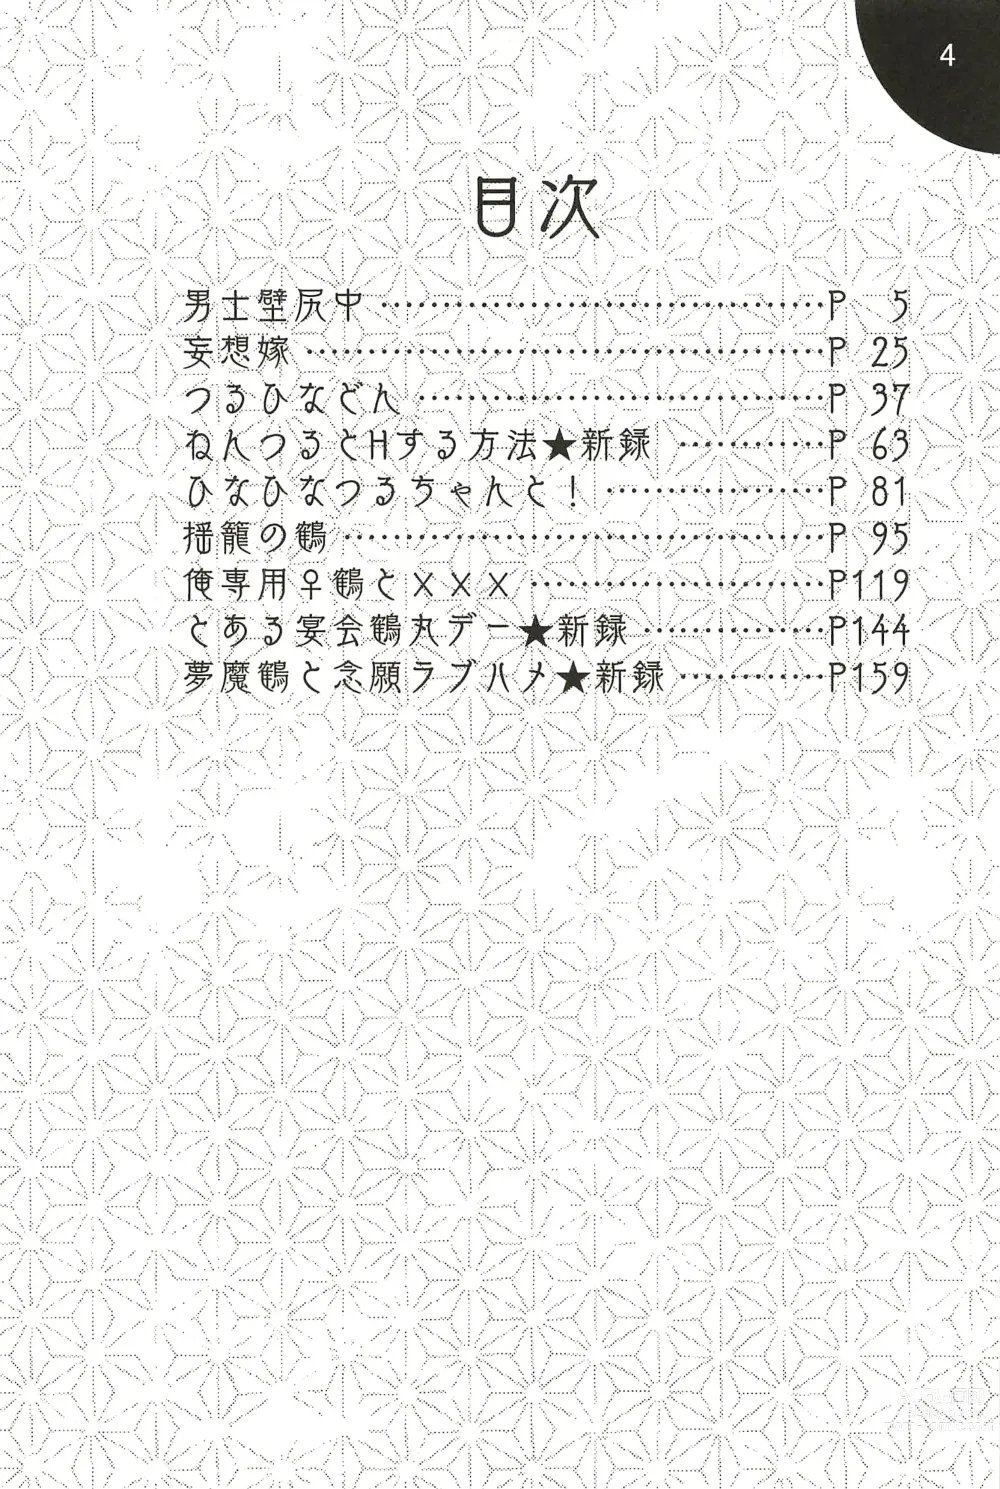 Page 4 of doujinshi Iromono Shu